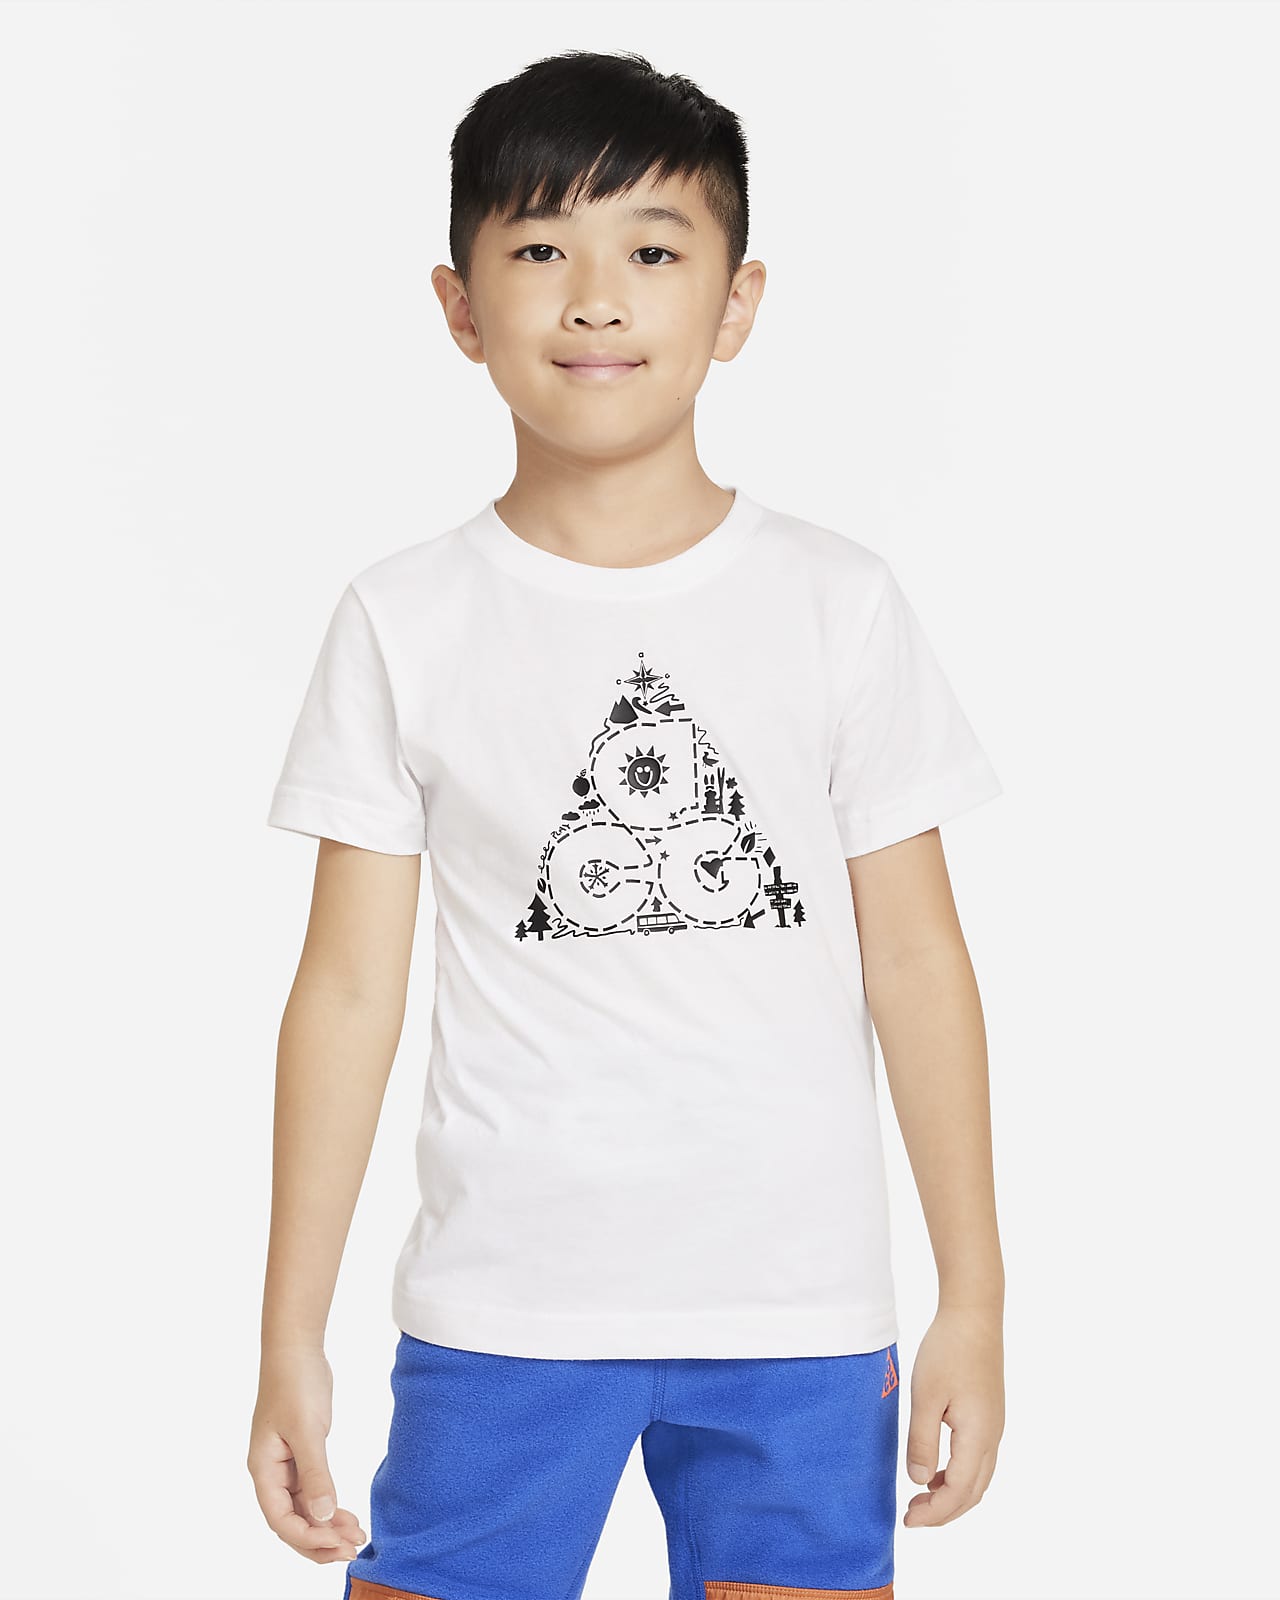 T-shirt ACG Nike – Bambino/a